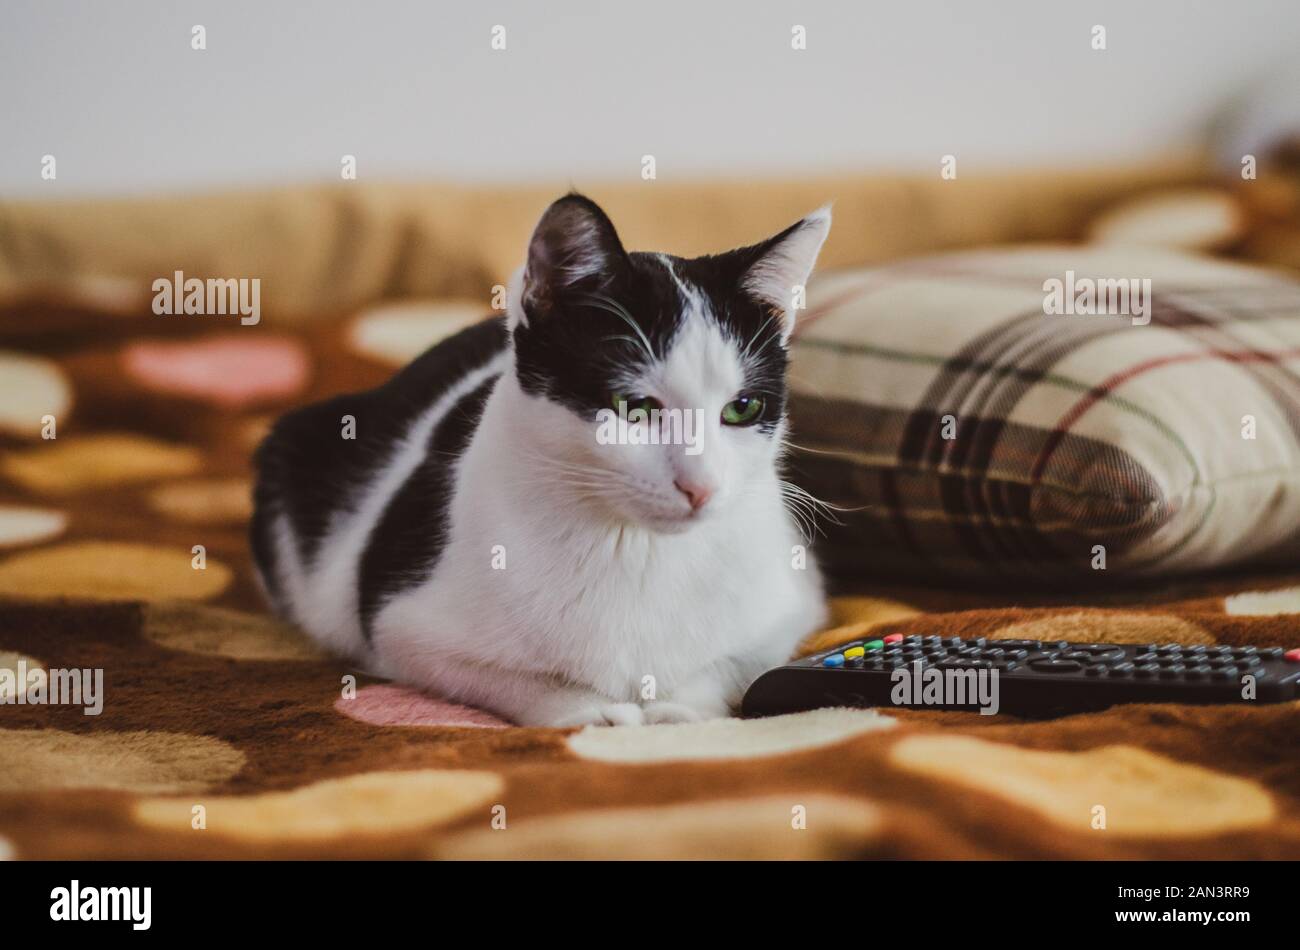 Black and white cat watching TV Stock Photo